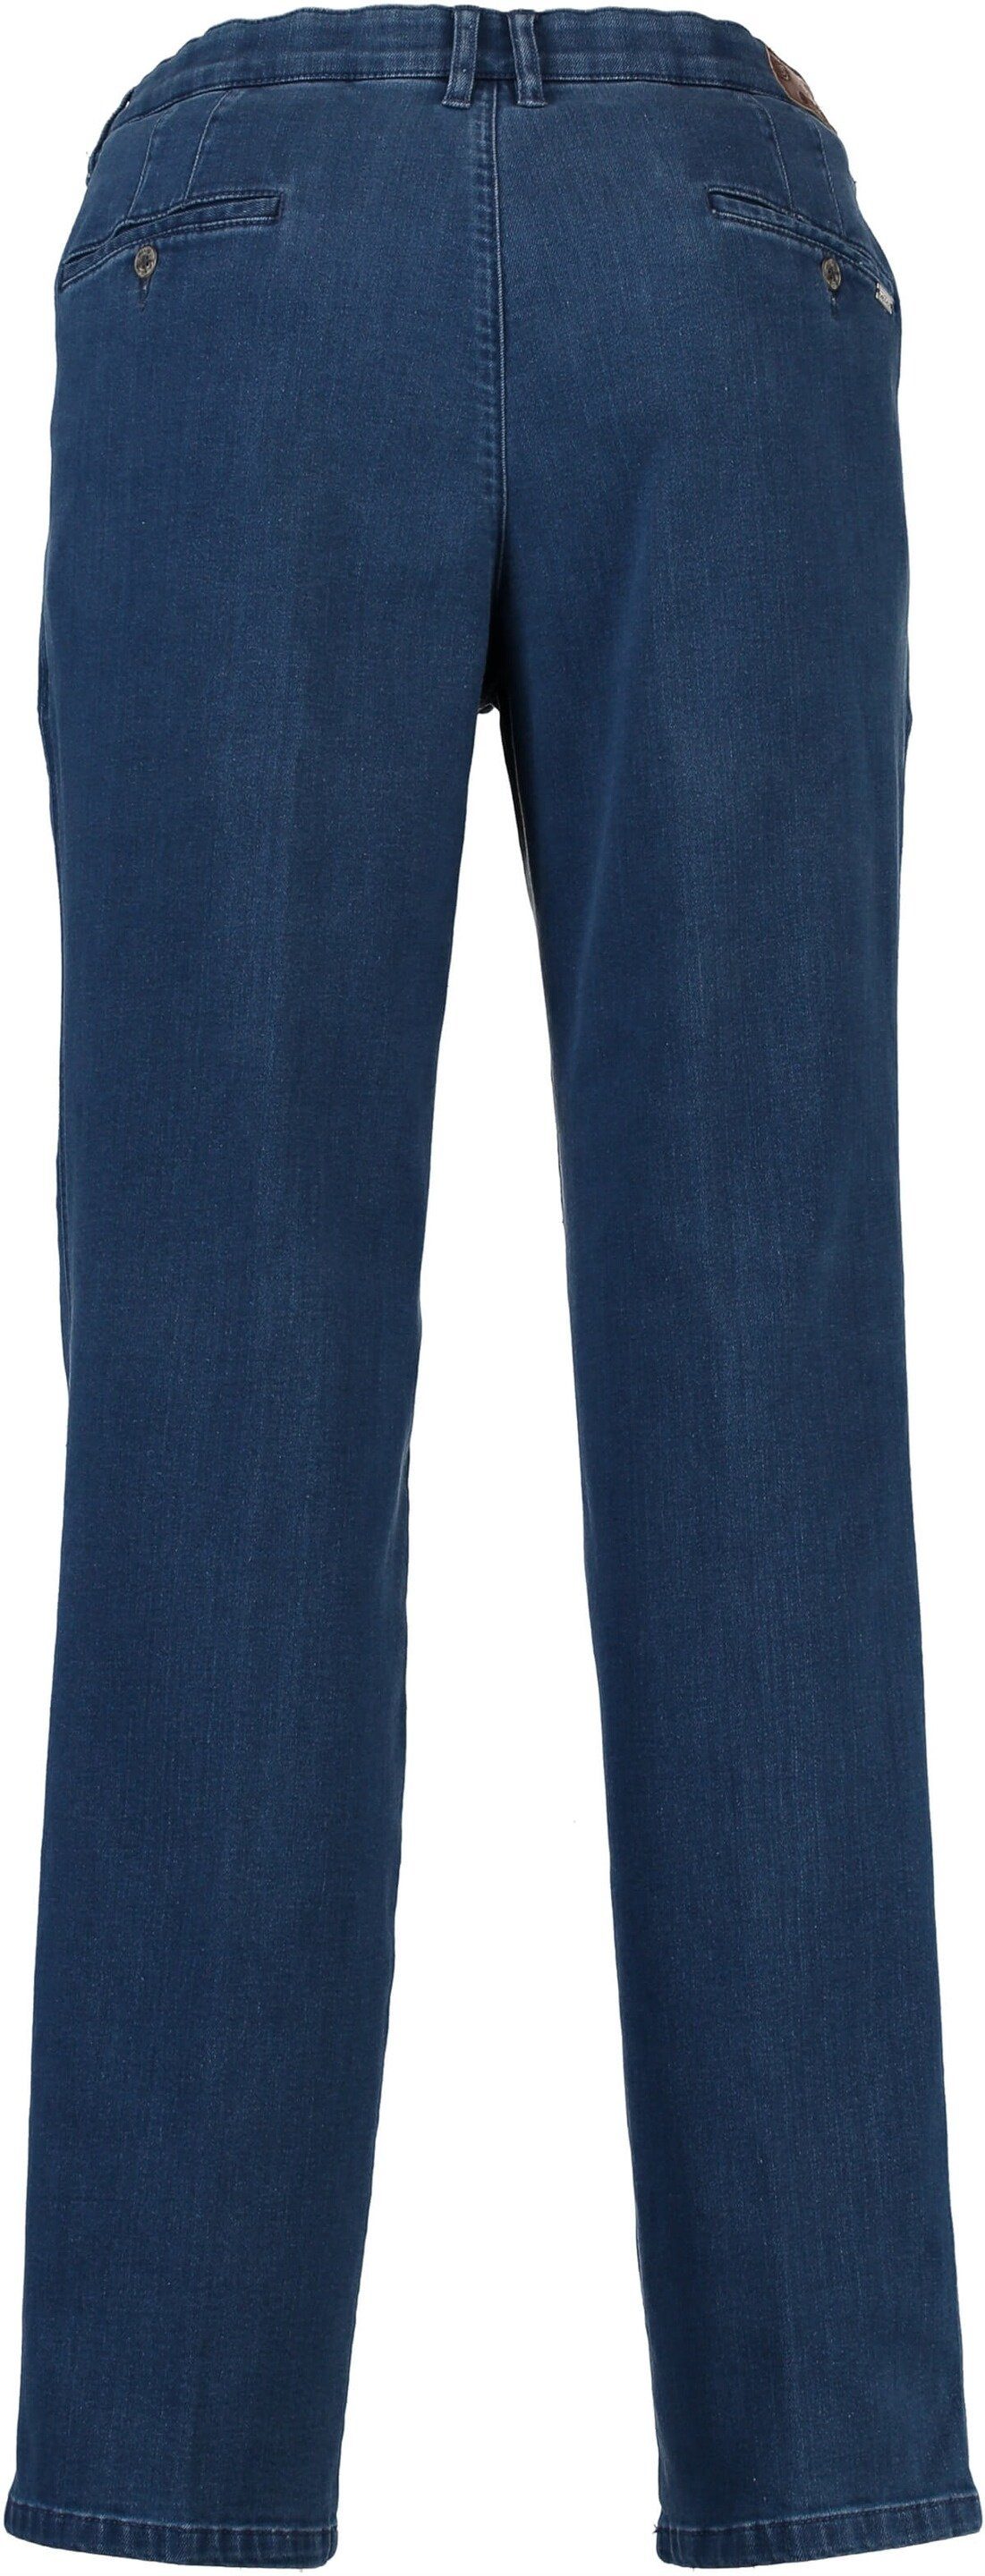 Regular-fit-Jeans Hose M.E.N.S. jeansblau m.e.n.s Baumwoll-Stretch